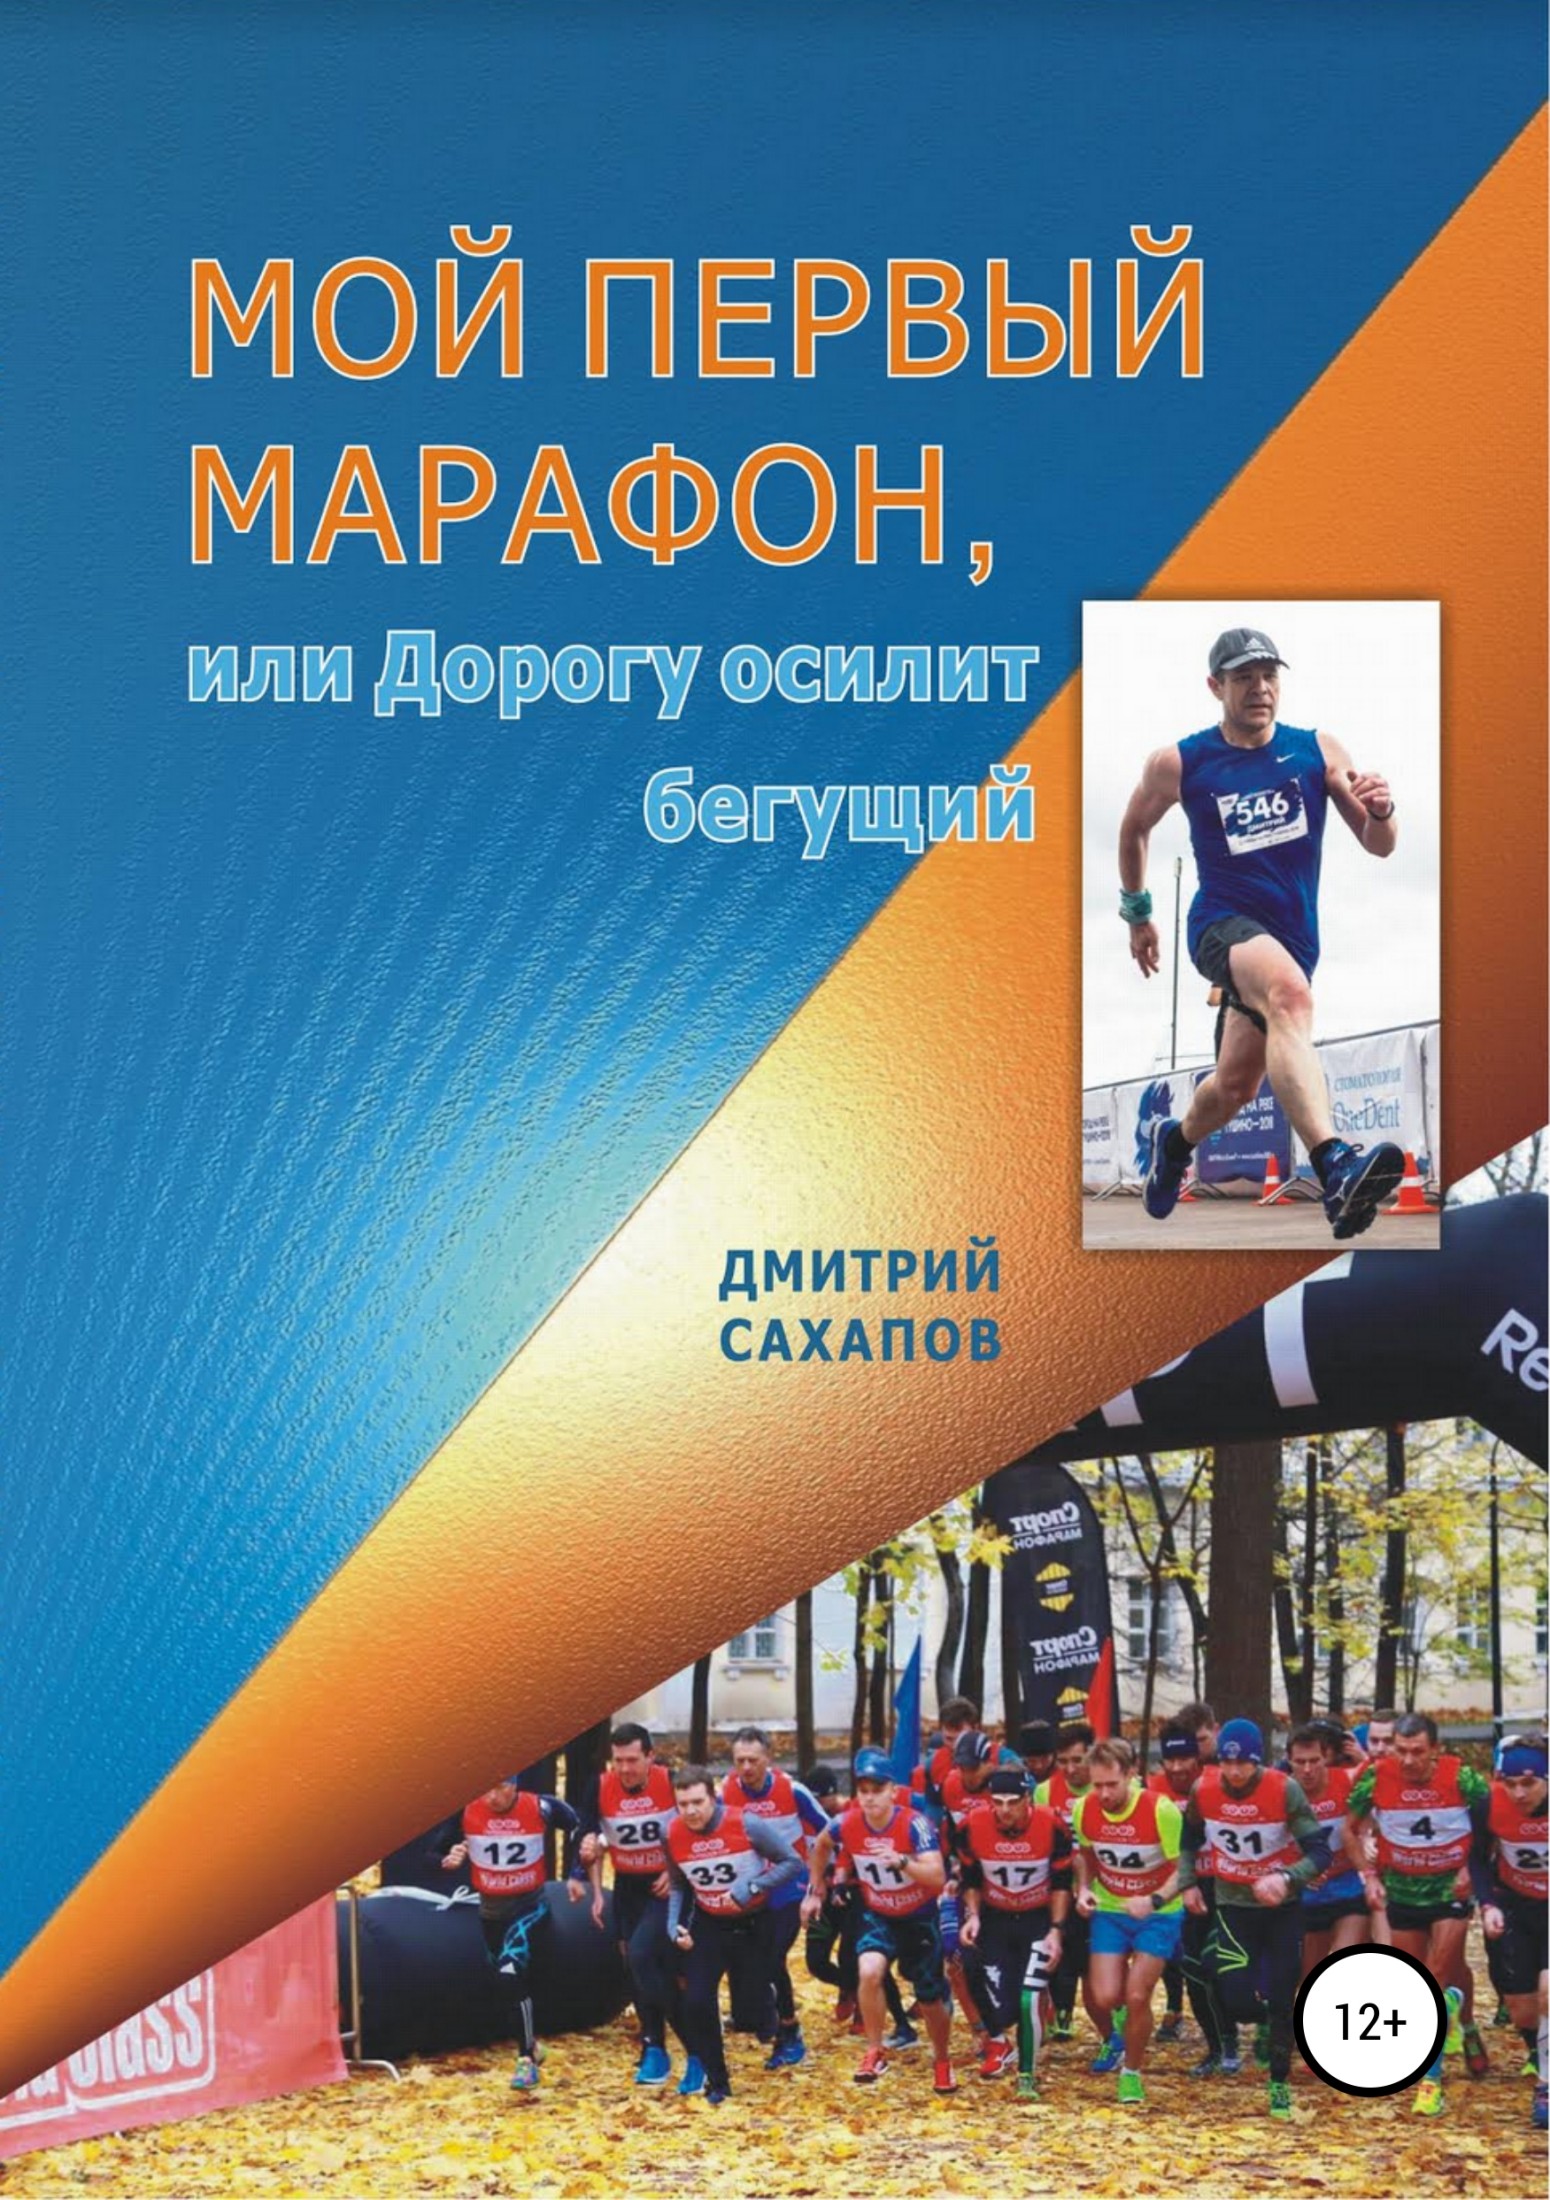 Сахапов Дмитрий - Мой первый марафон, или Дорогу осилит бегущий скачать бесплатно